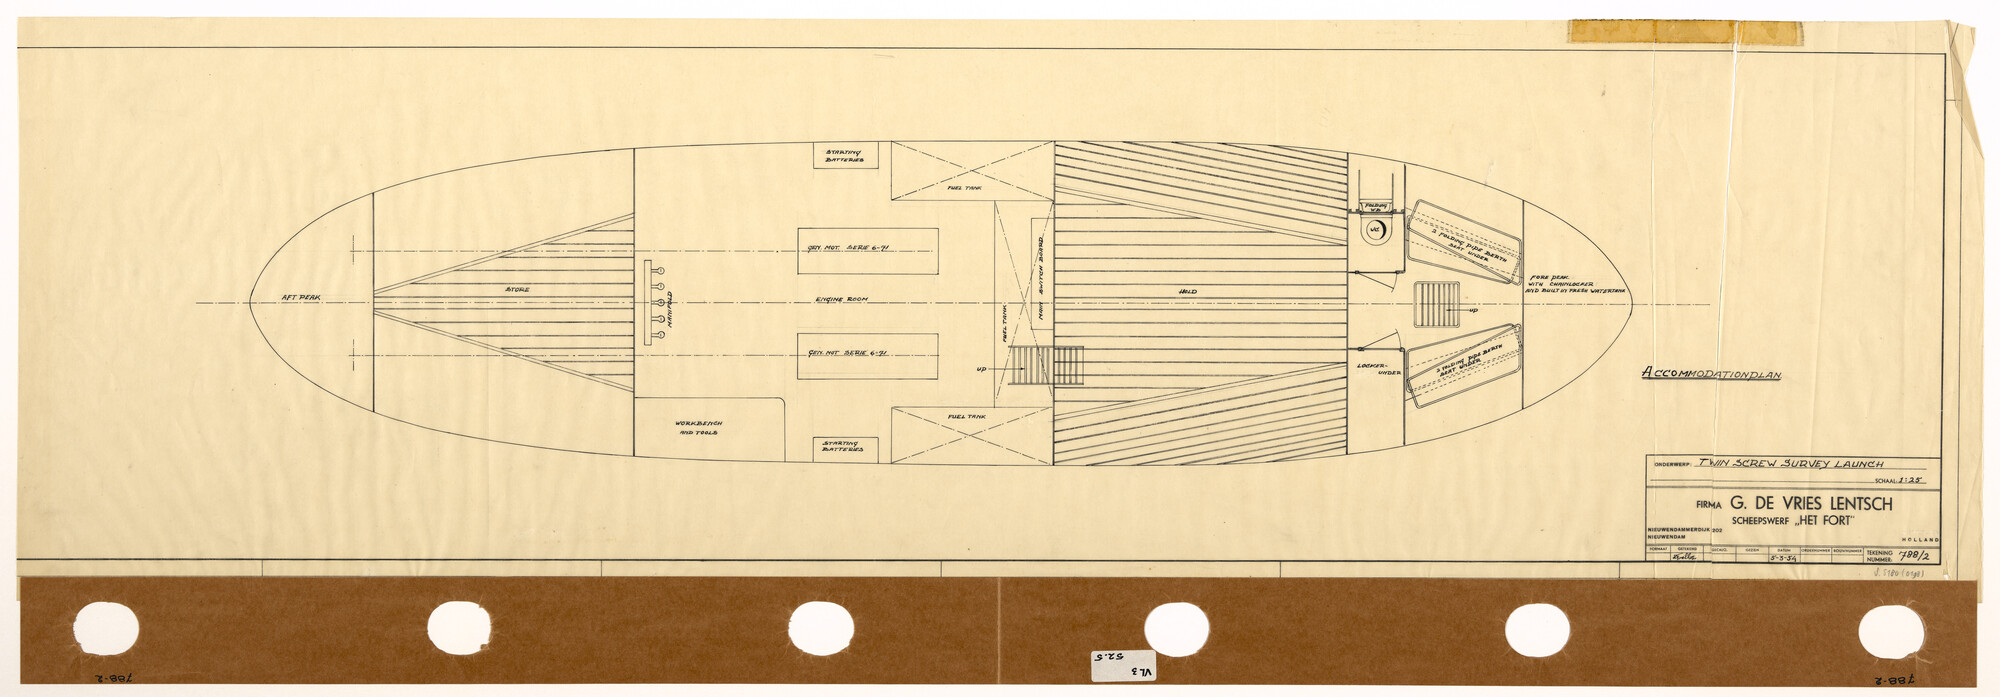 S.5180(0198); Indelingsplan van een inspectievaartuig; technische tekening